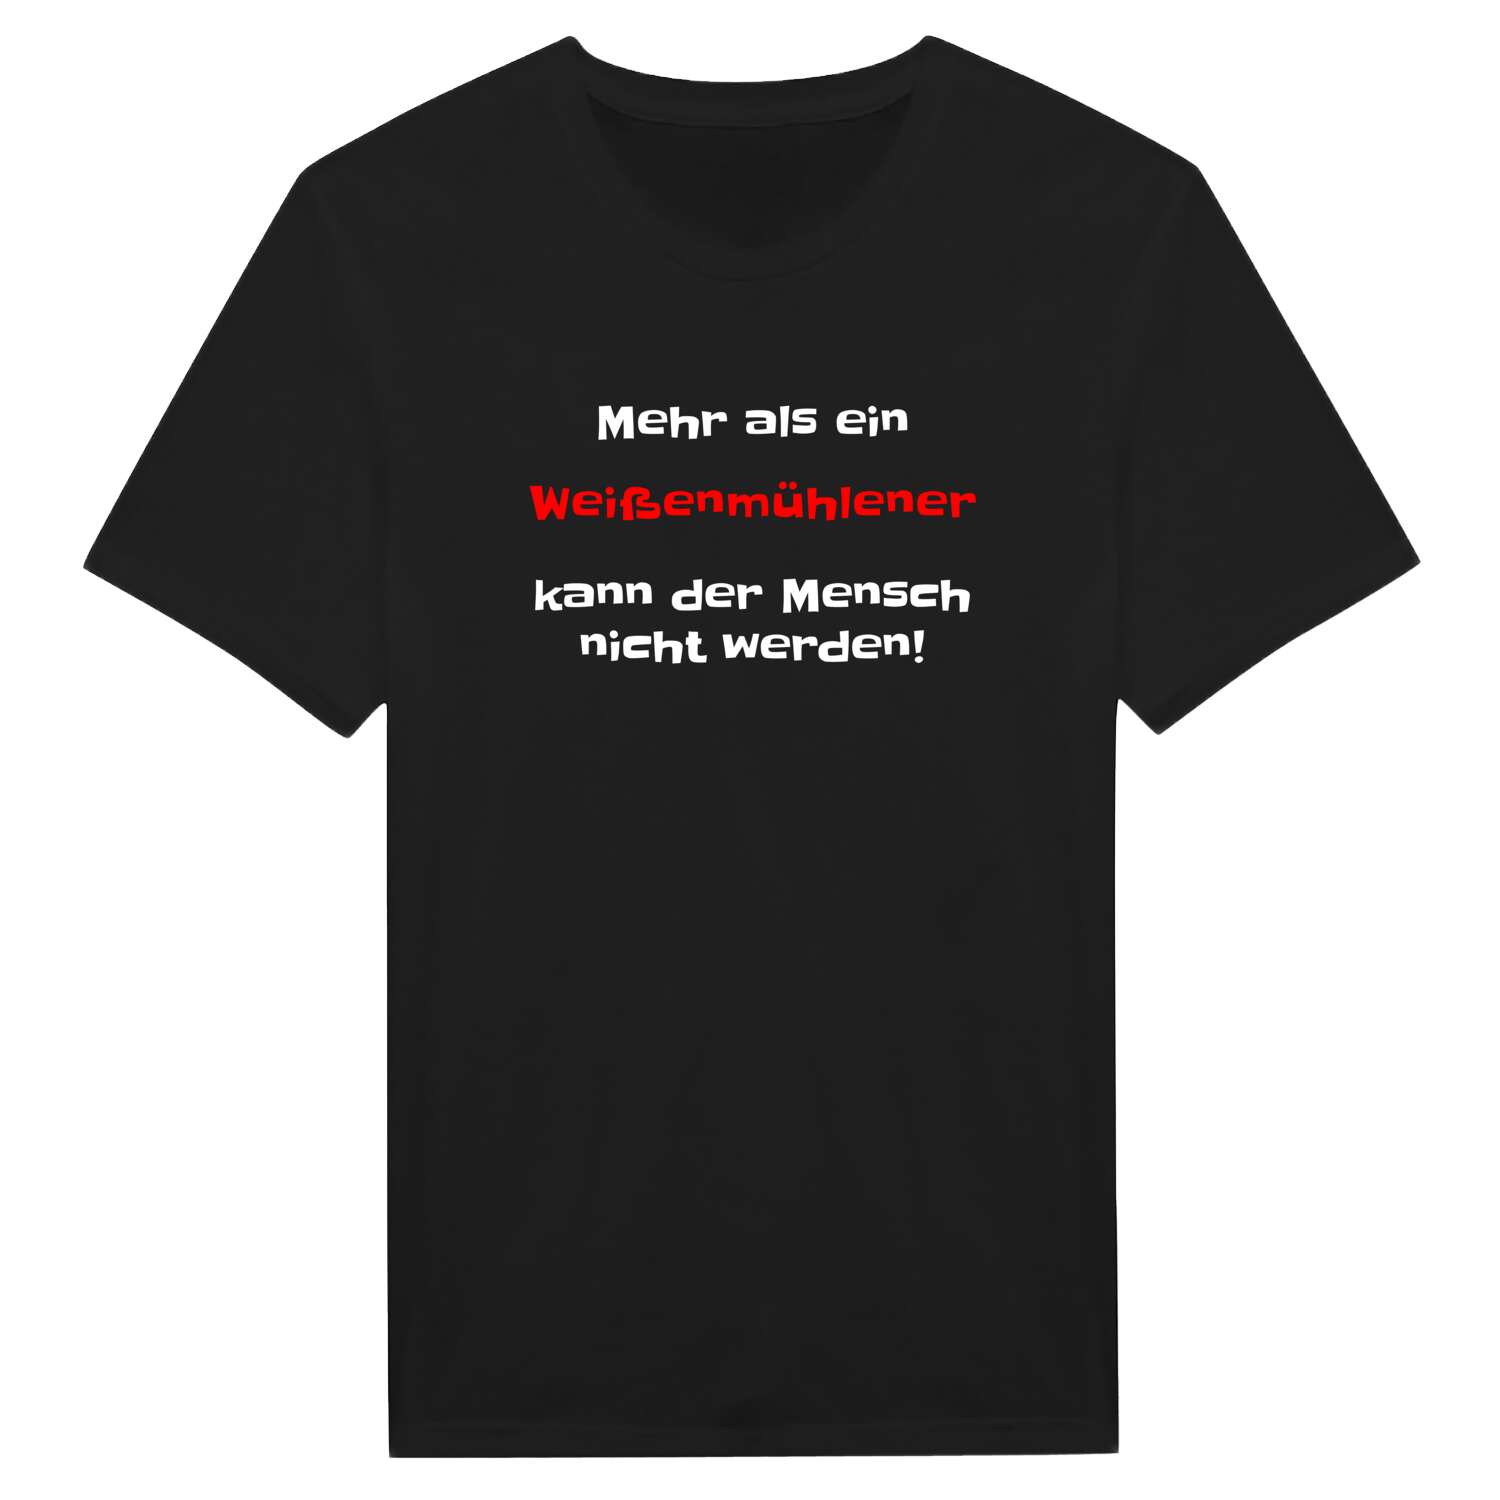 Weißenmühle T-Shirt »Mehr als ein«